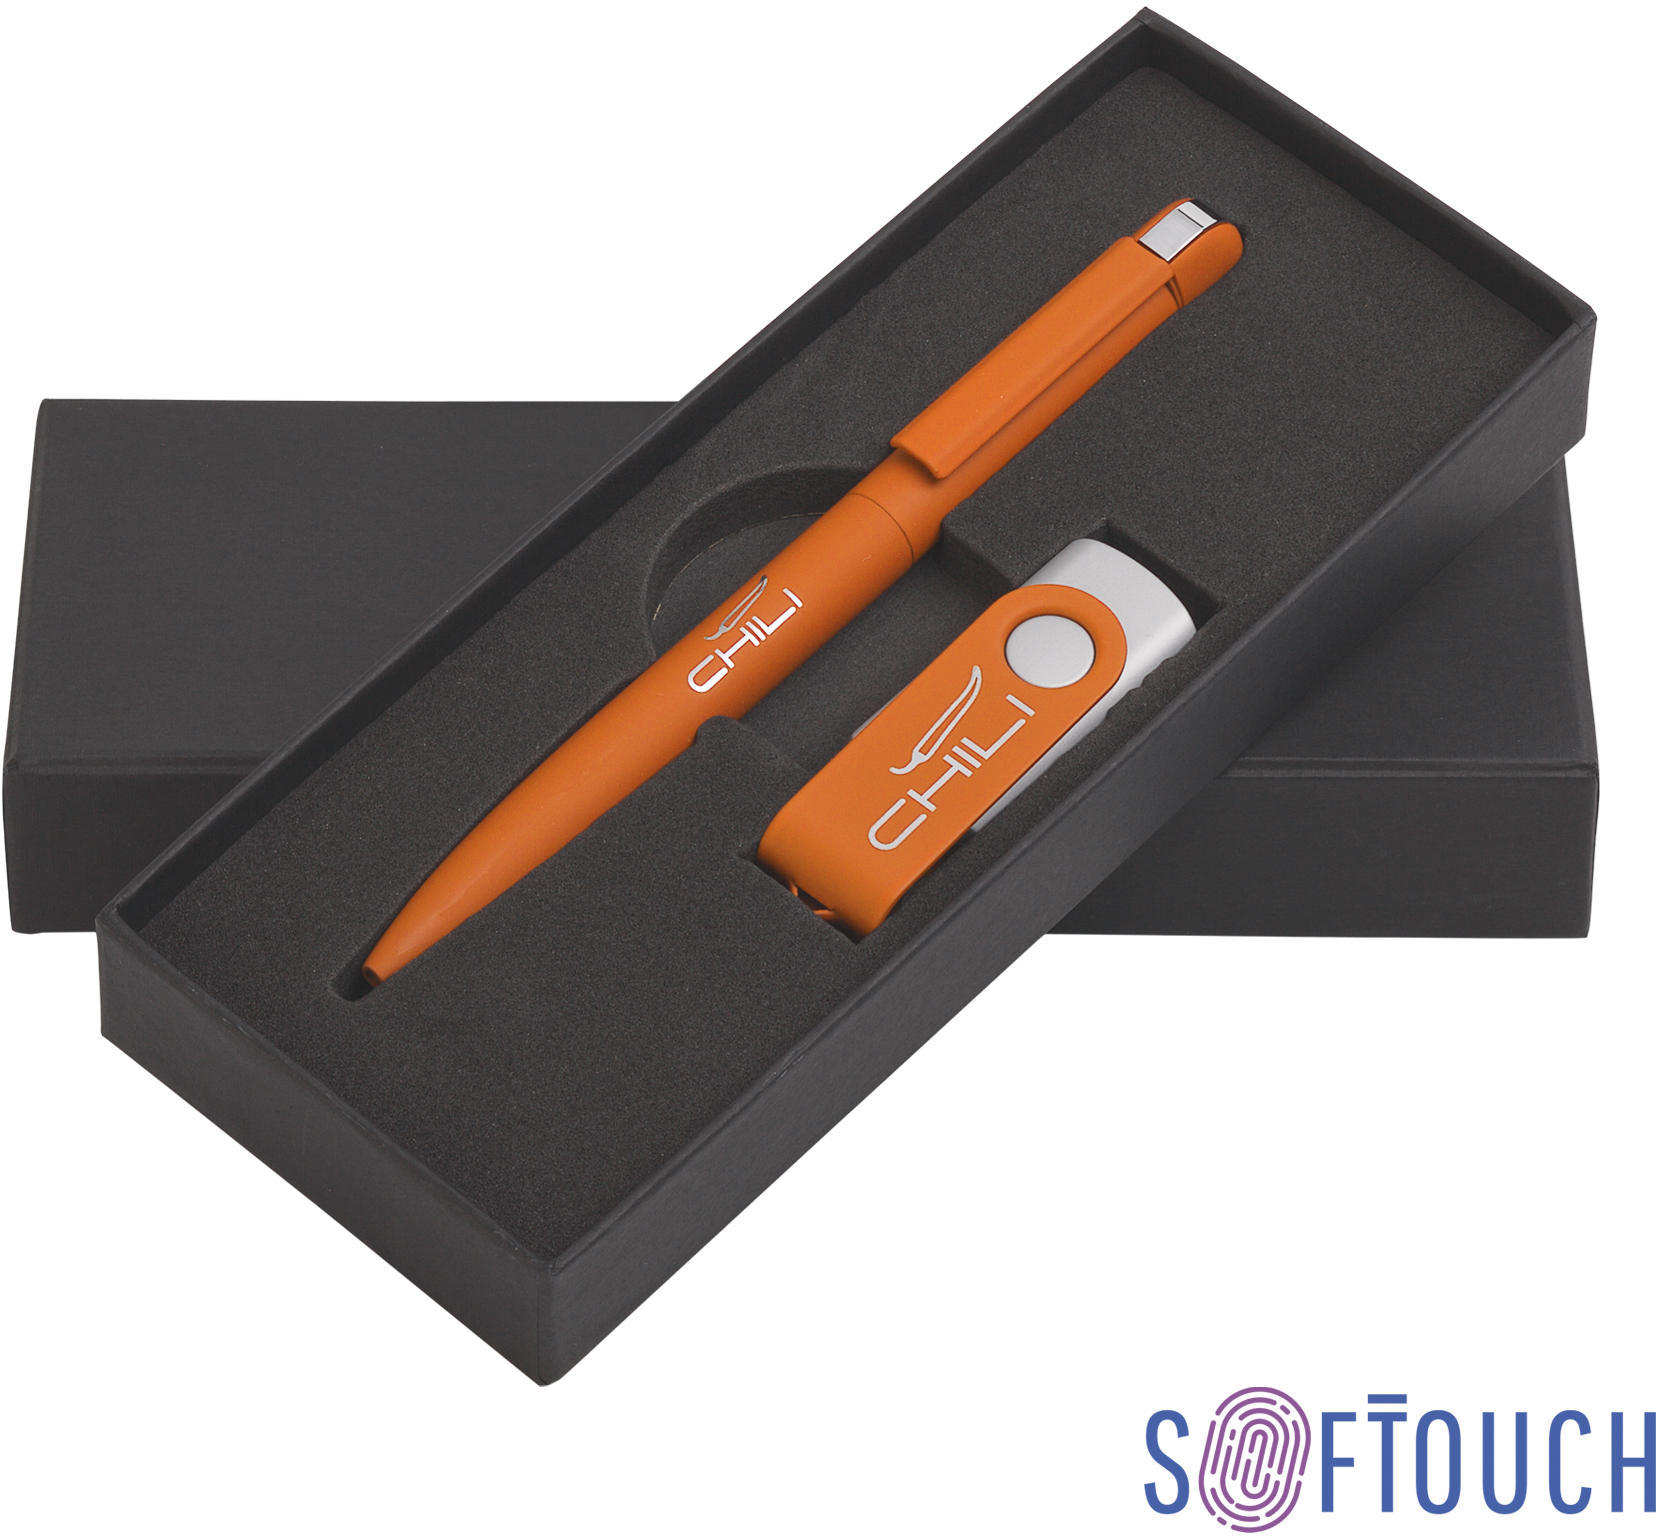 Артикул: E6877-10S/8Gb — Набор ручка + флеш-карта 8 Гб в футляре, покрытие soft touch